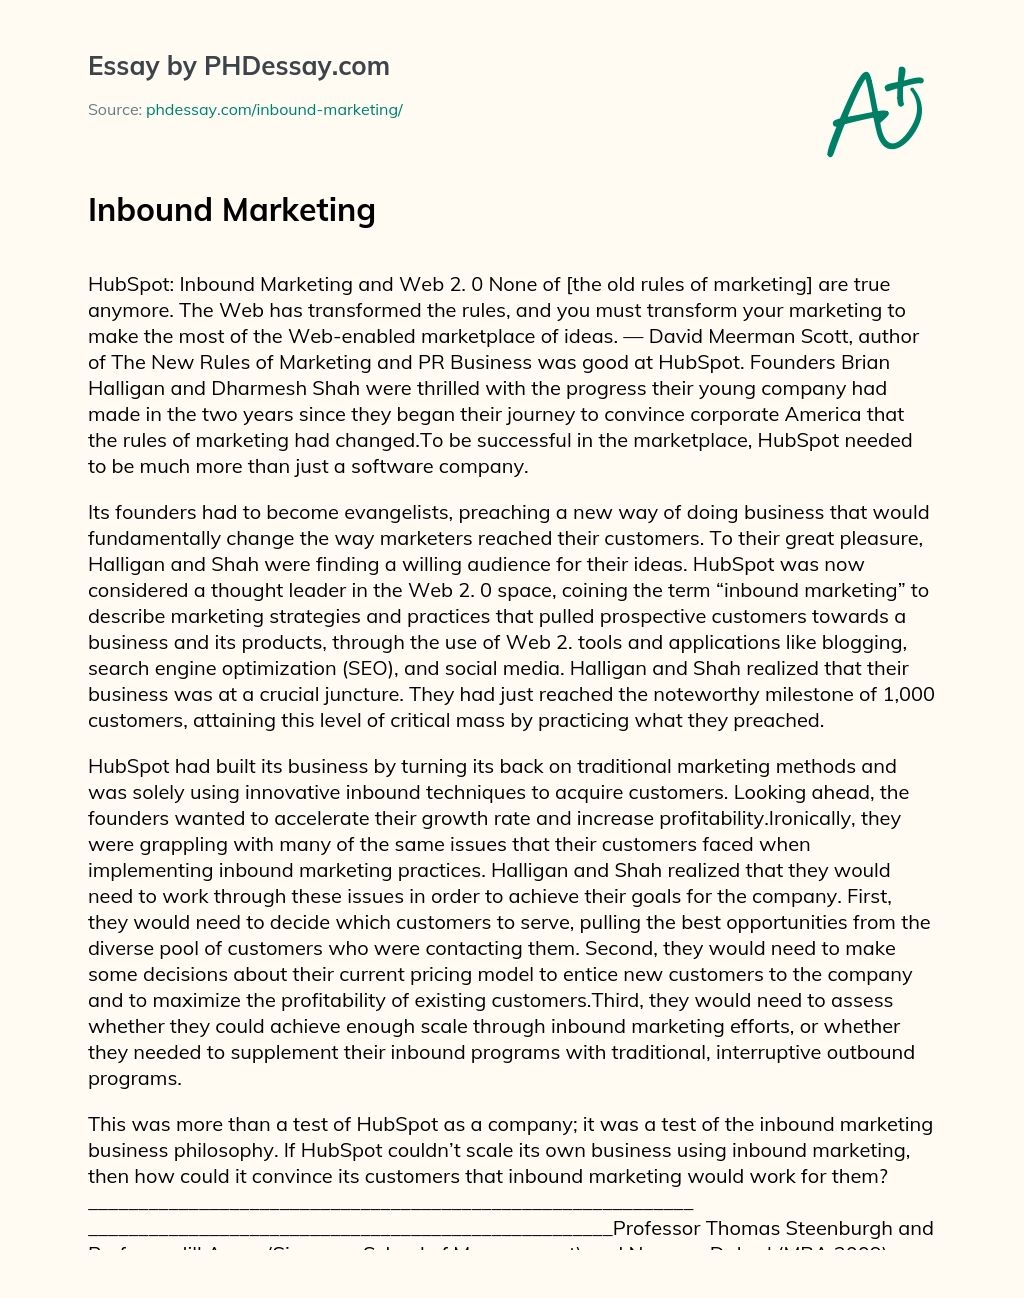 Inbound Marketing essay